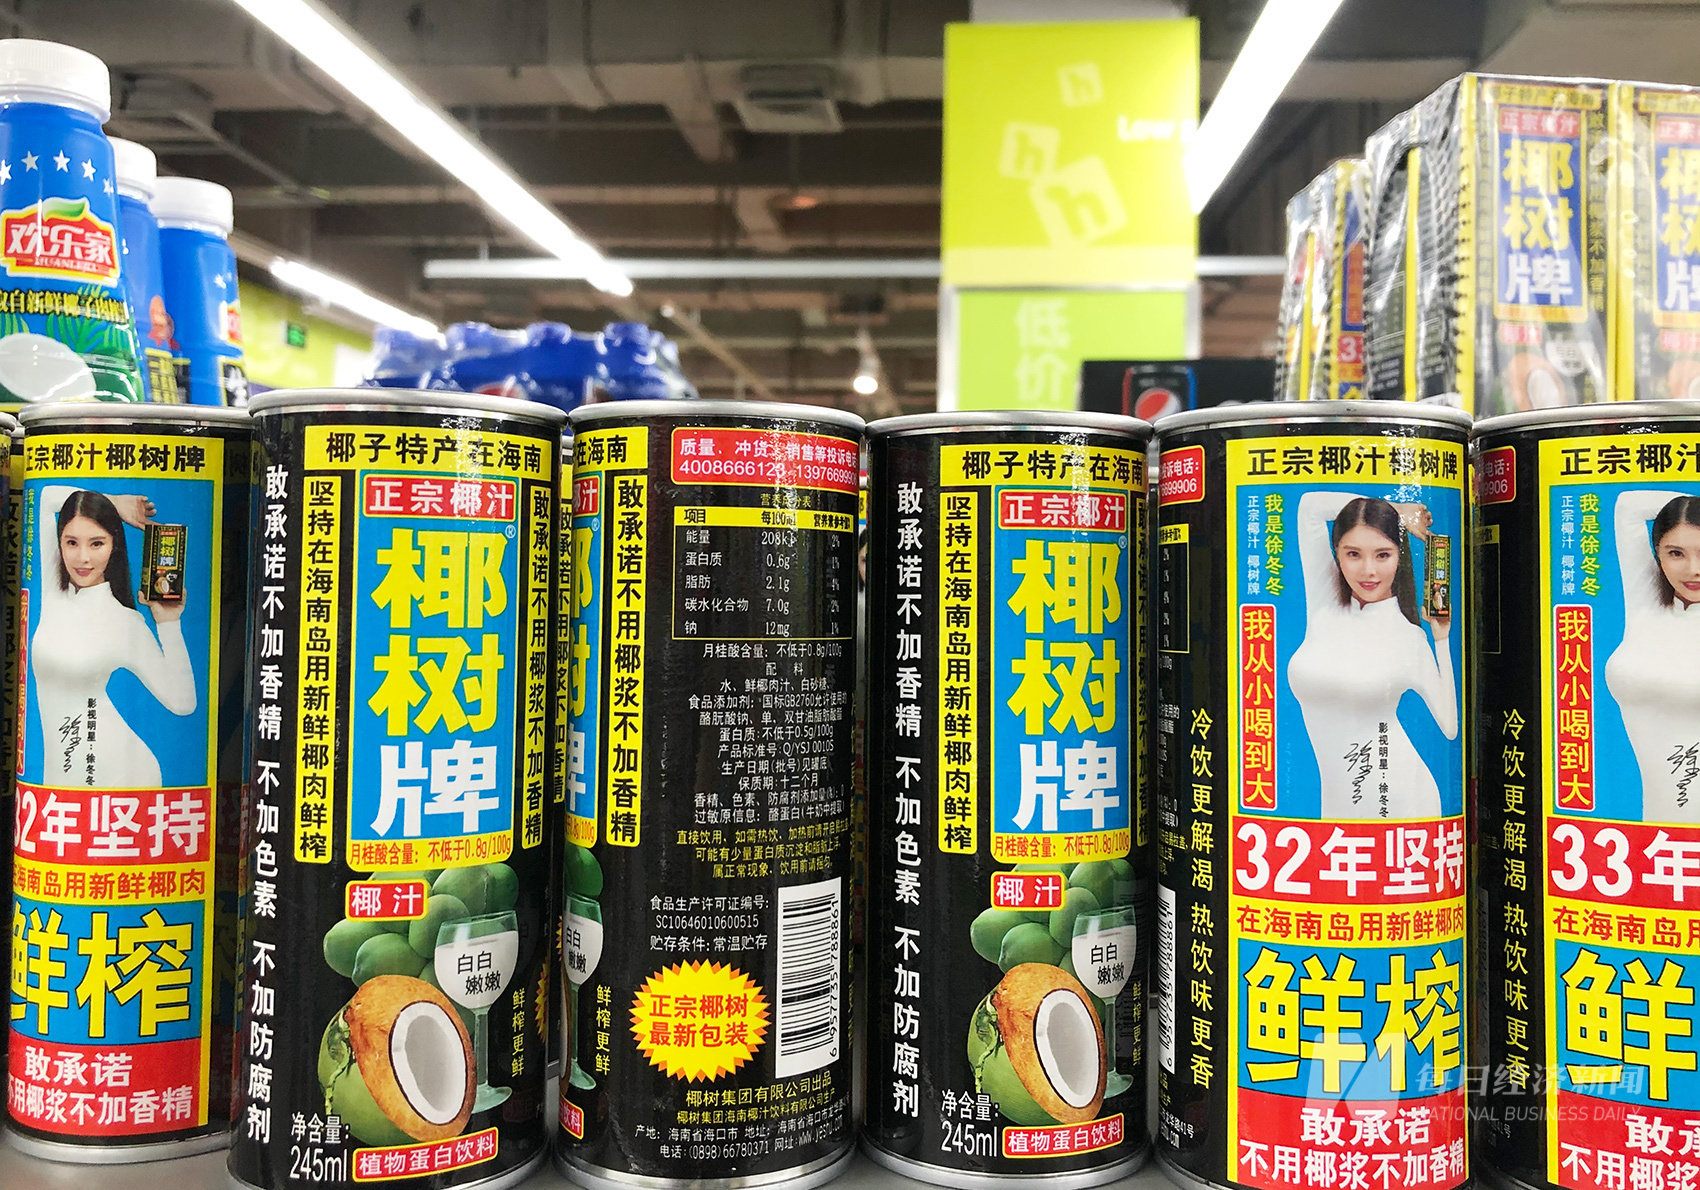 椰树集团直播带货又惹争议，国民椰汁为何对“出格营销”如此执着？_截图_产品_网络